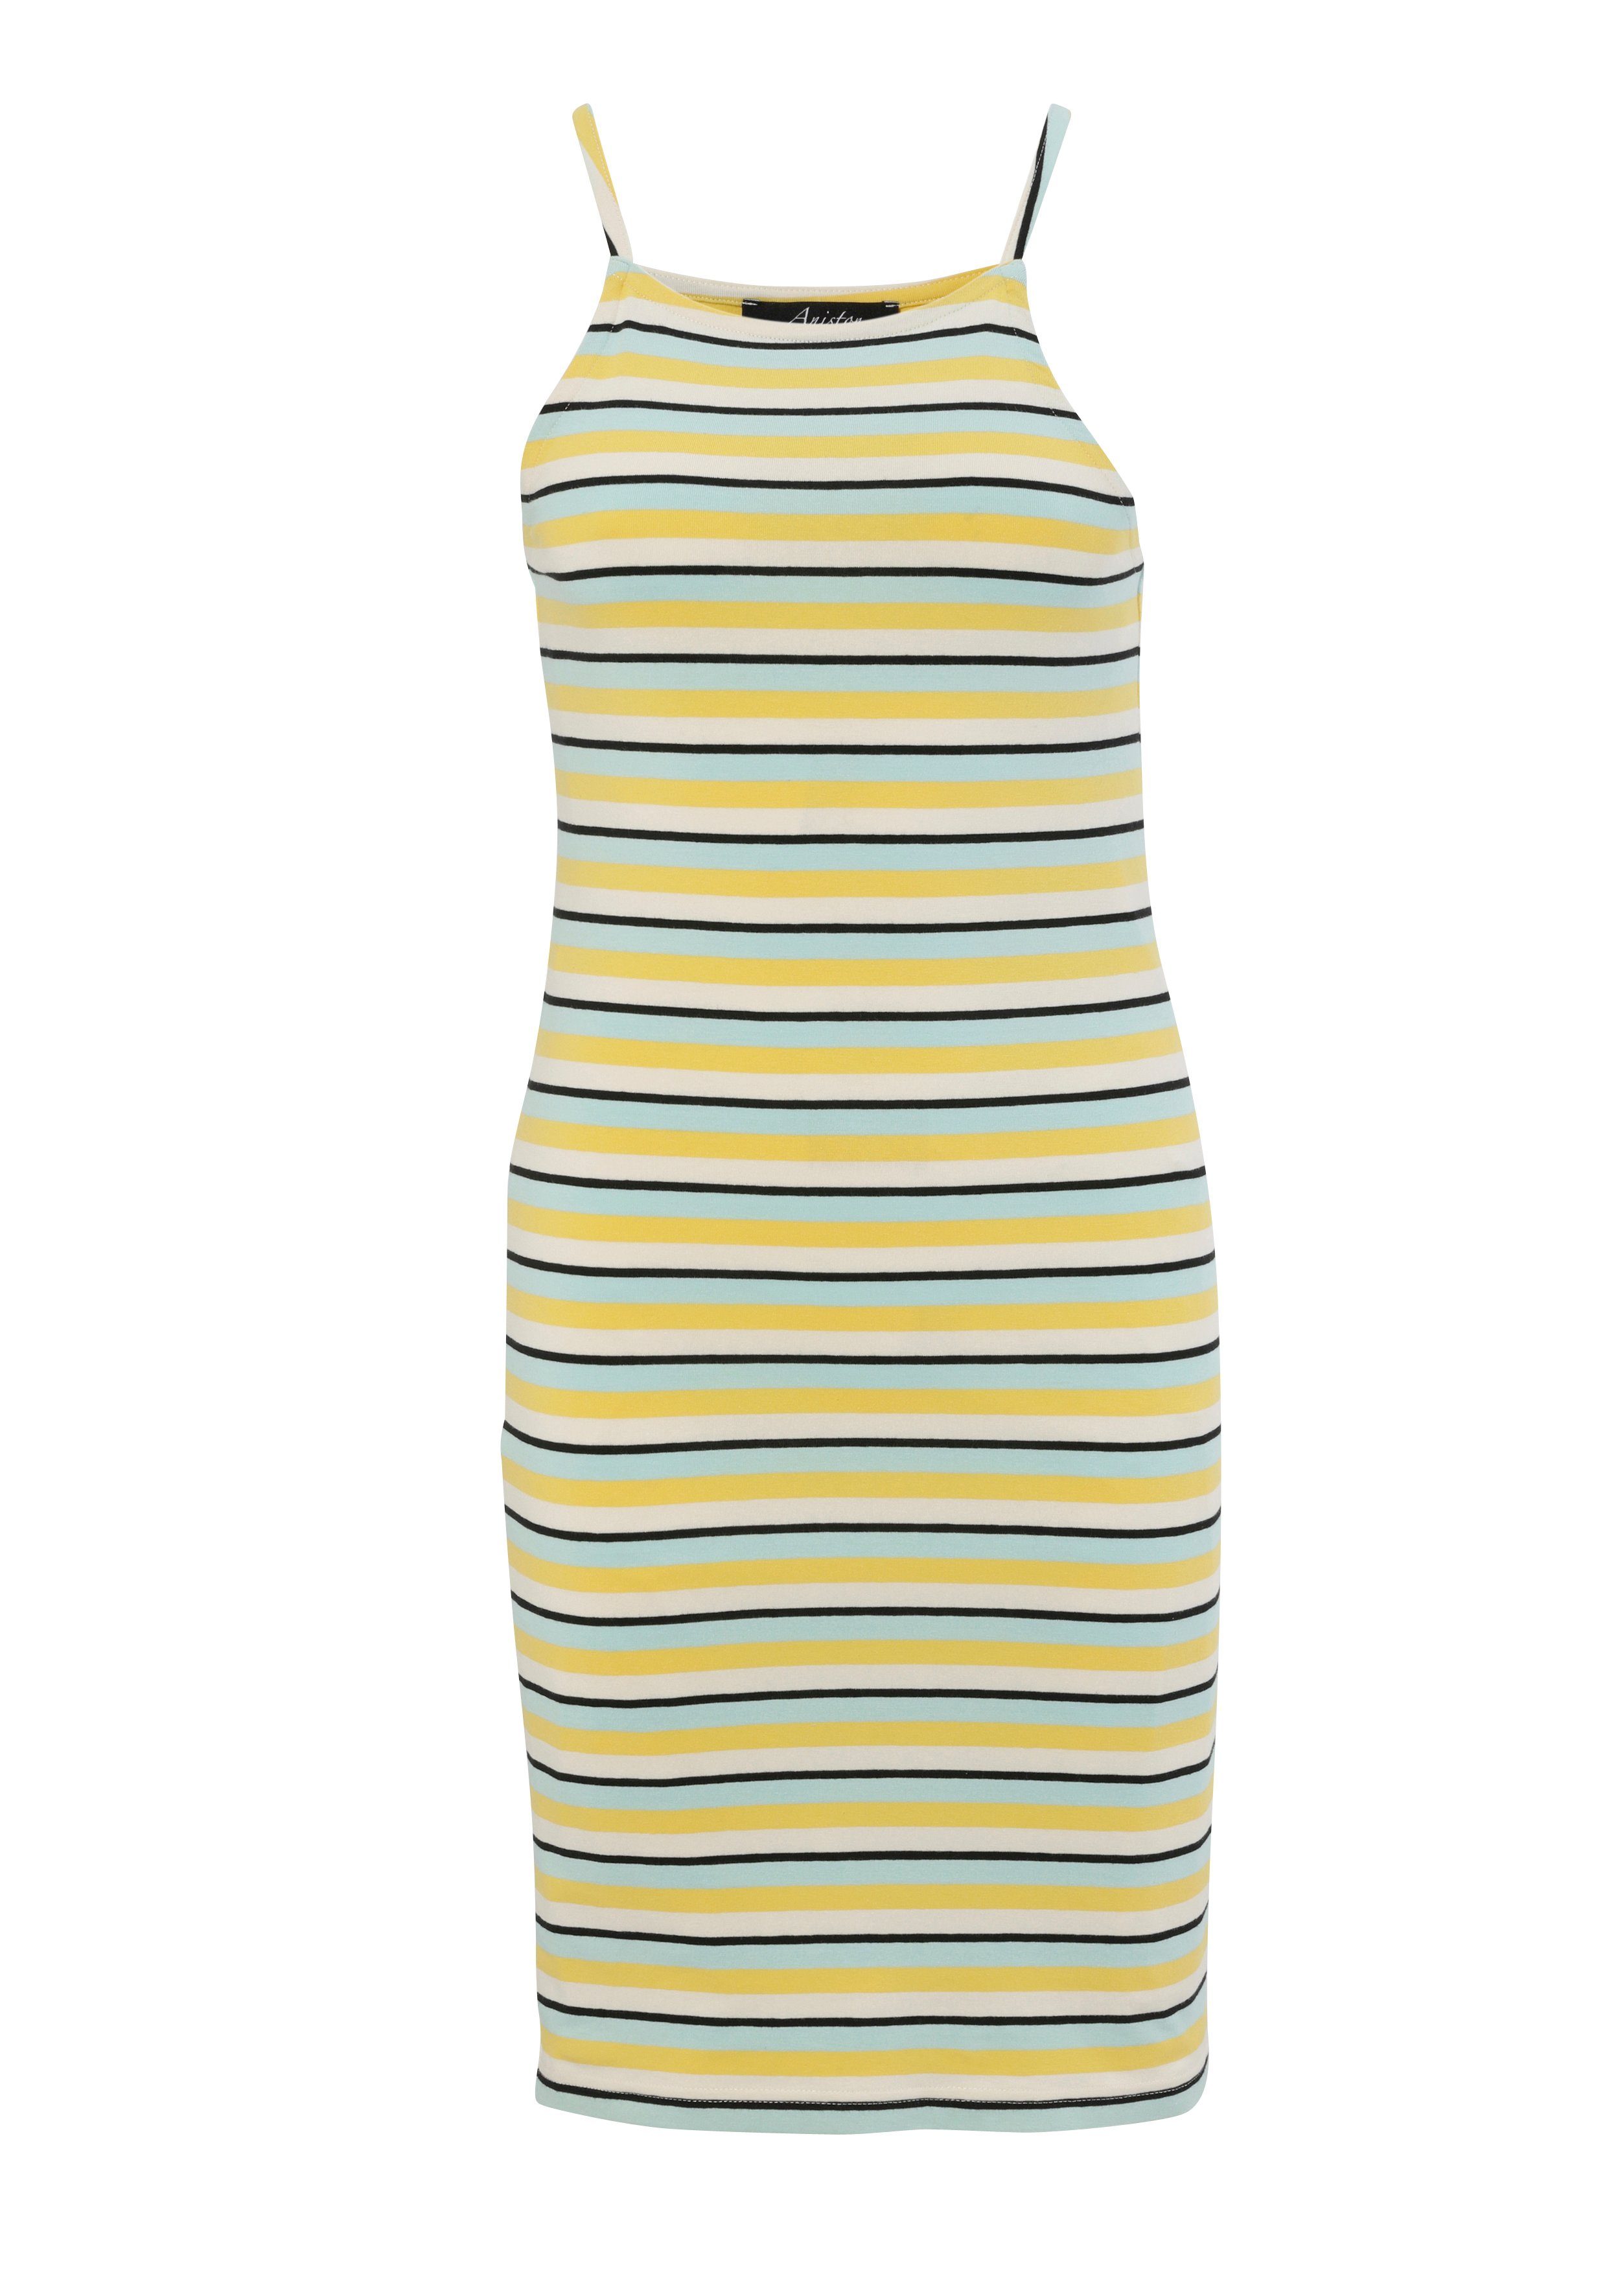 Aniston CASUAL Sommerkleid - oder hast Wahl gestreift die bunt helltürkis-gelb-wollweiß-schwarz du Marine-Look